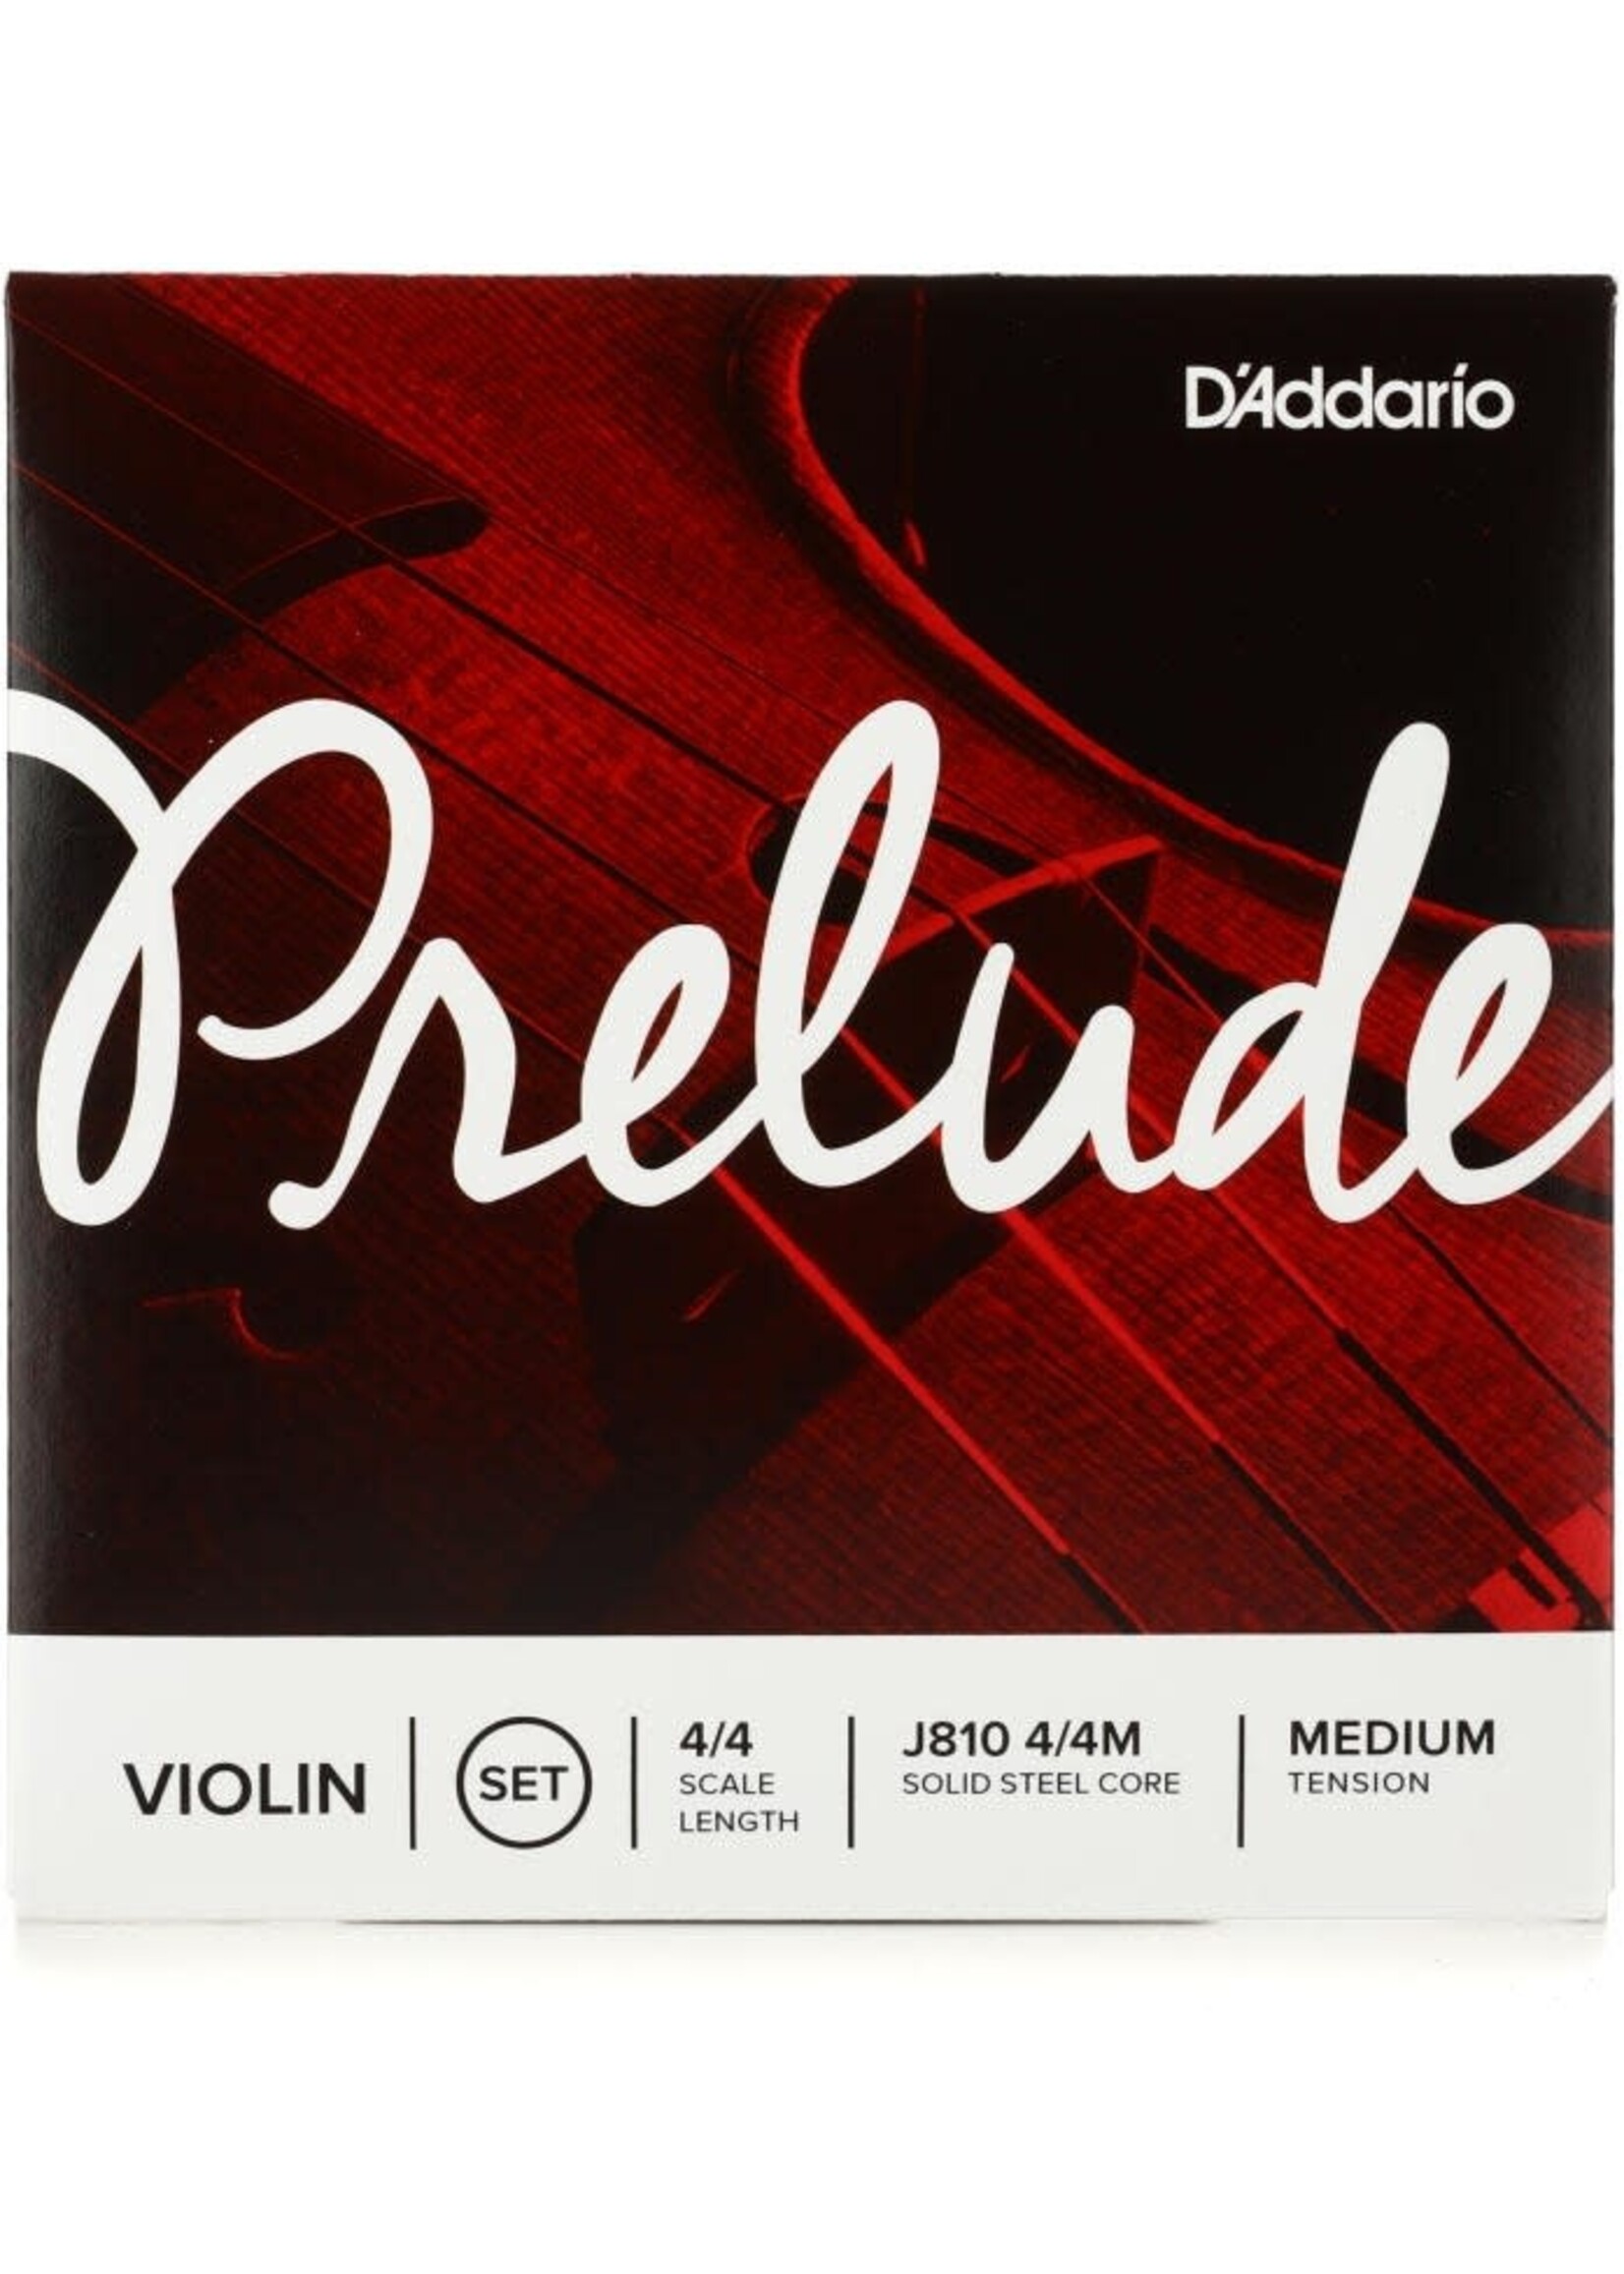 D'Addario D'Addario J810 4/4M Prelude Medium 4/4 Violin String Set